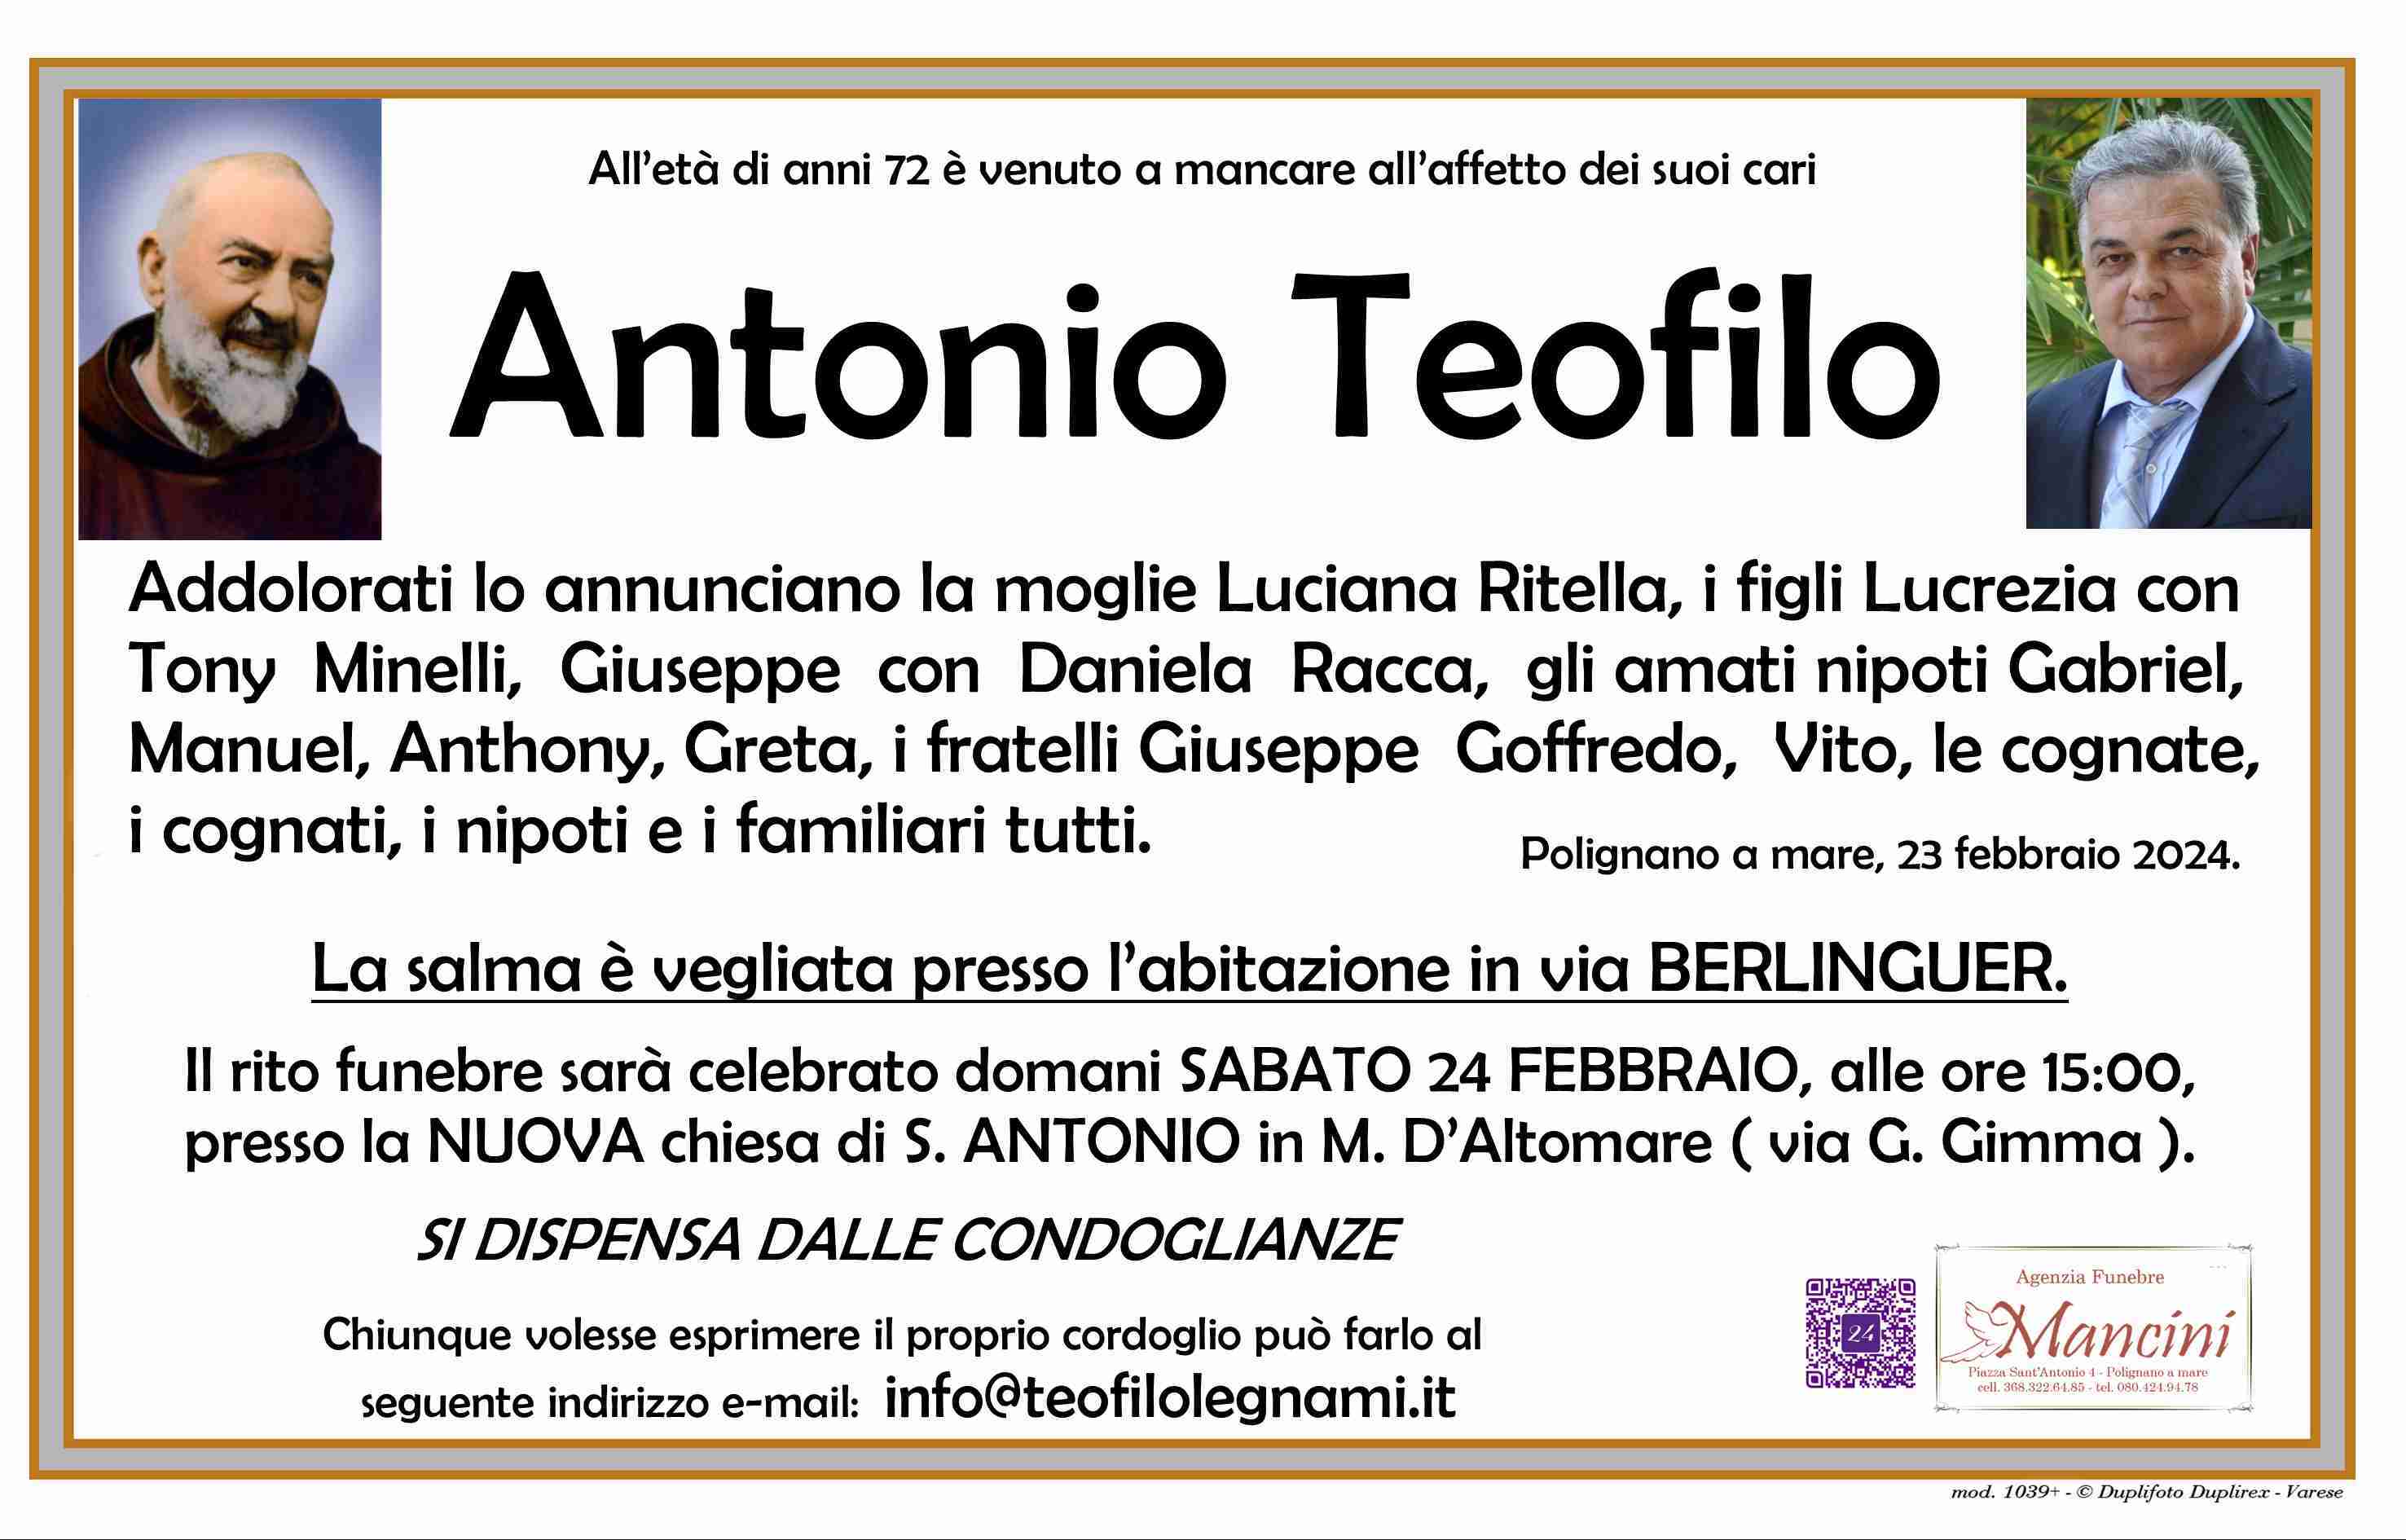 Antonio Teofilo